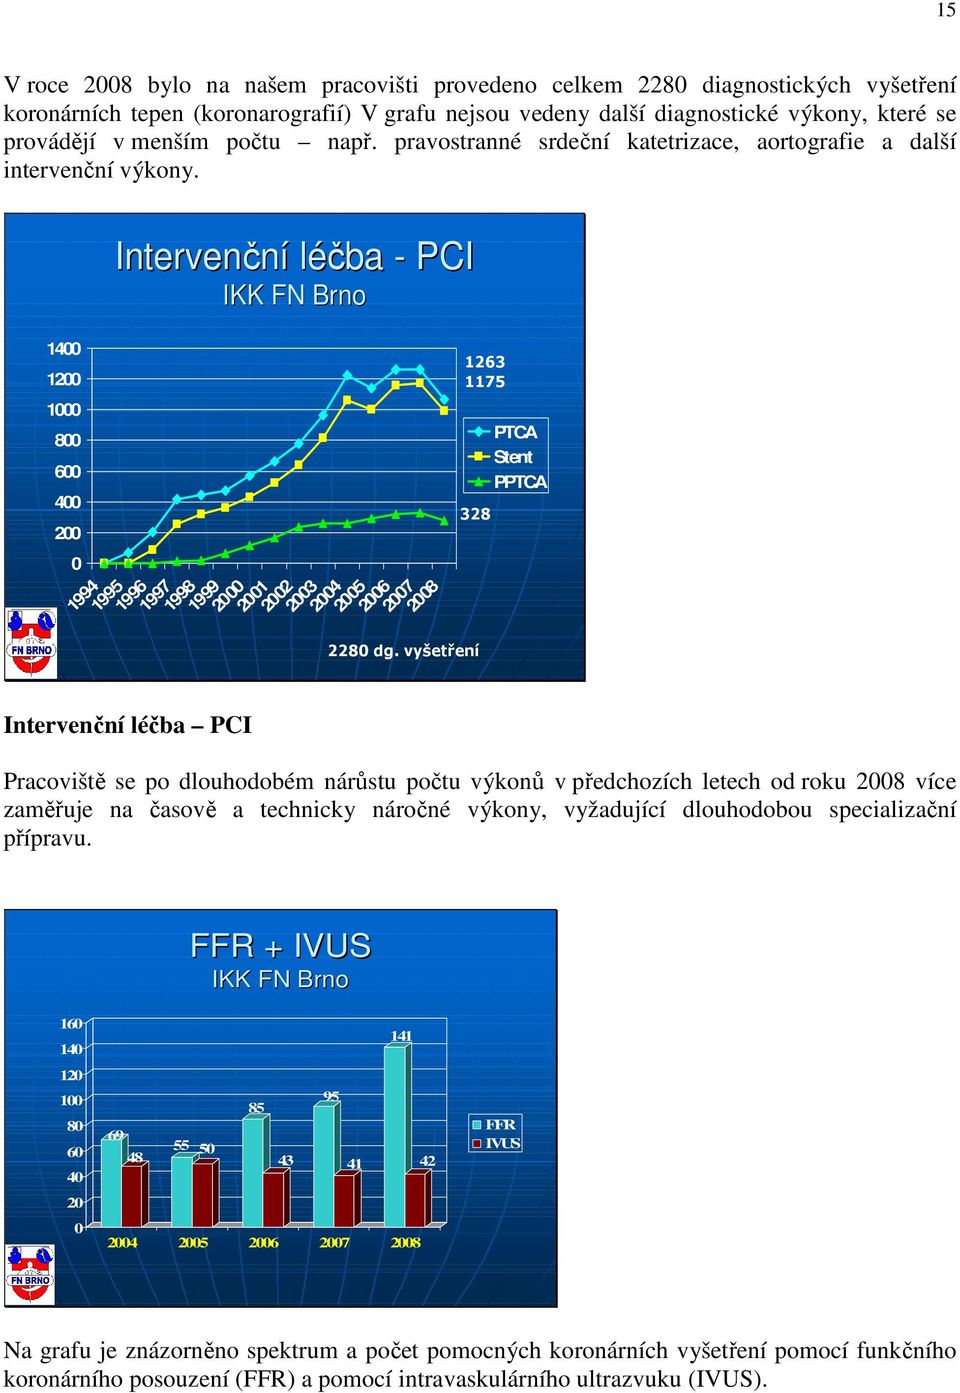 Intervenční léčba - PCI IKK FN Brno 1400 1200 1000 800 600 400 200 0 1994 1995 1996 Intervenční léčba PCI 1997 1998 1999 2000 2001 2002 2003 2004 2005 2006 2007 2008 2280 dg.